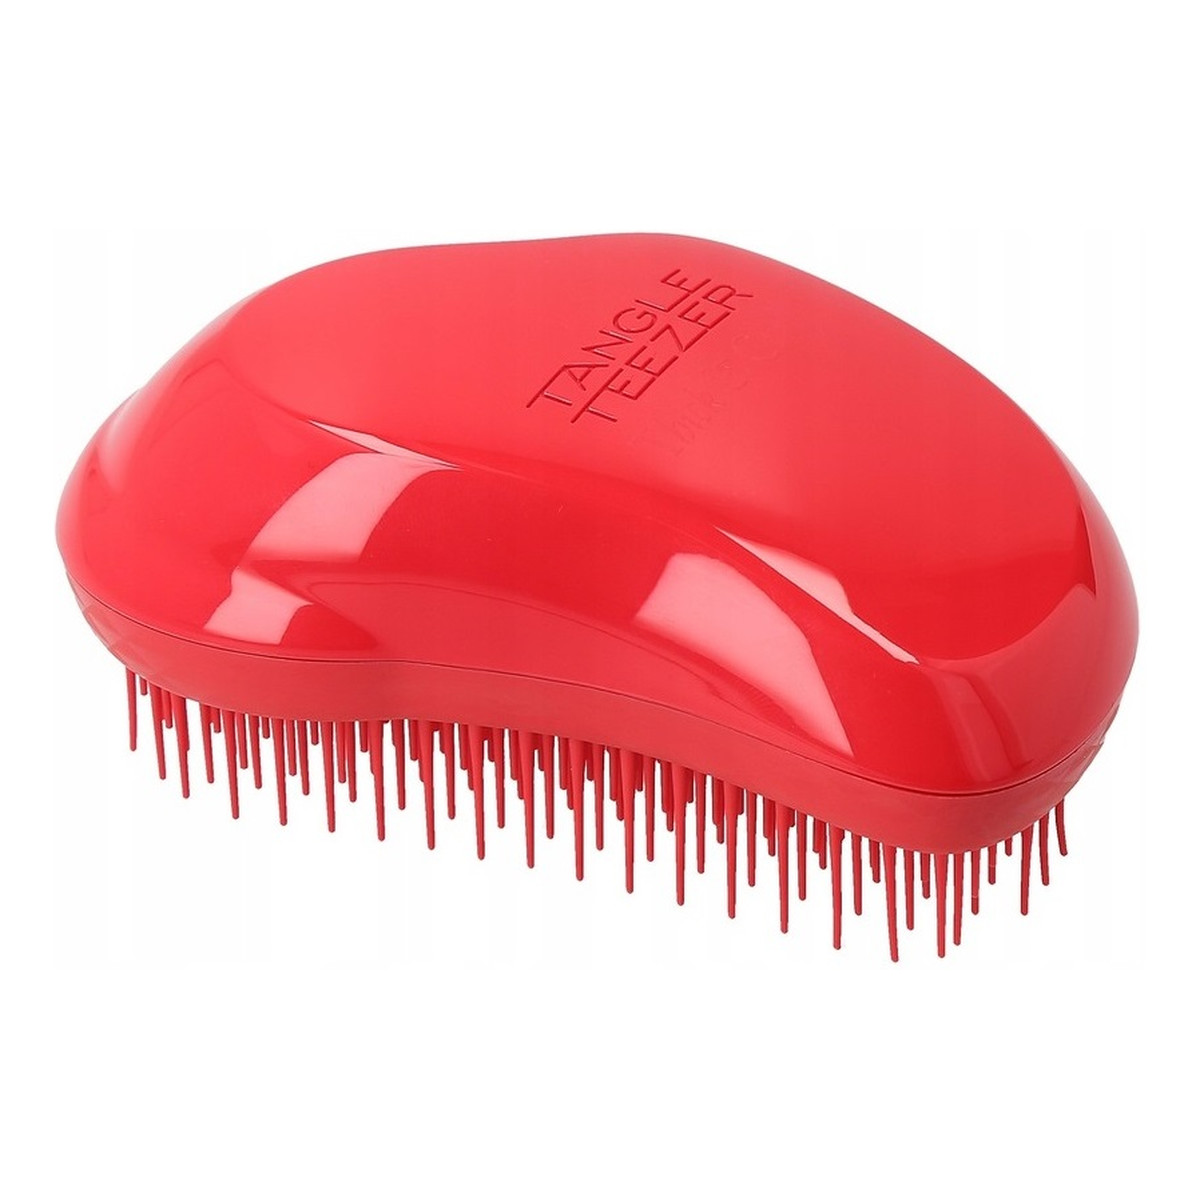 Tangle Teezer Thick & curly detangling hairbrush szczotka do włosów gęstych i kręconych salsa red